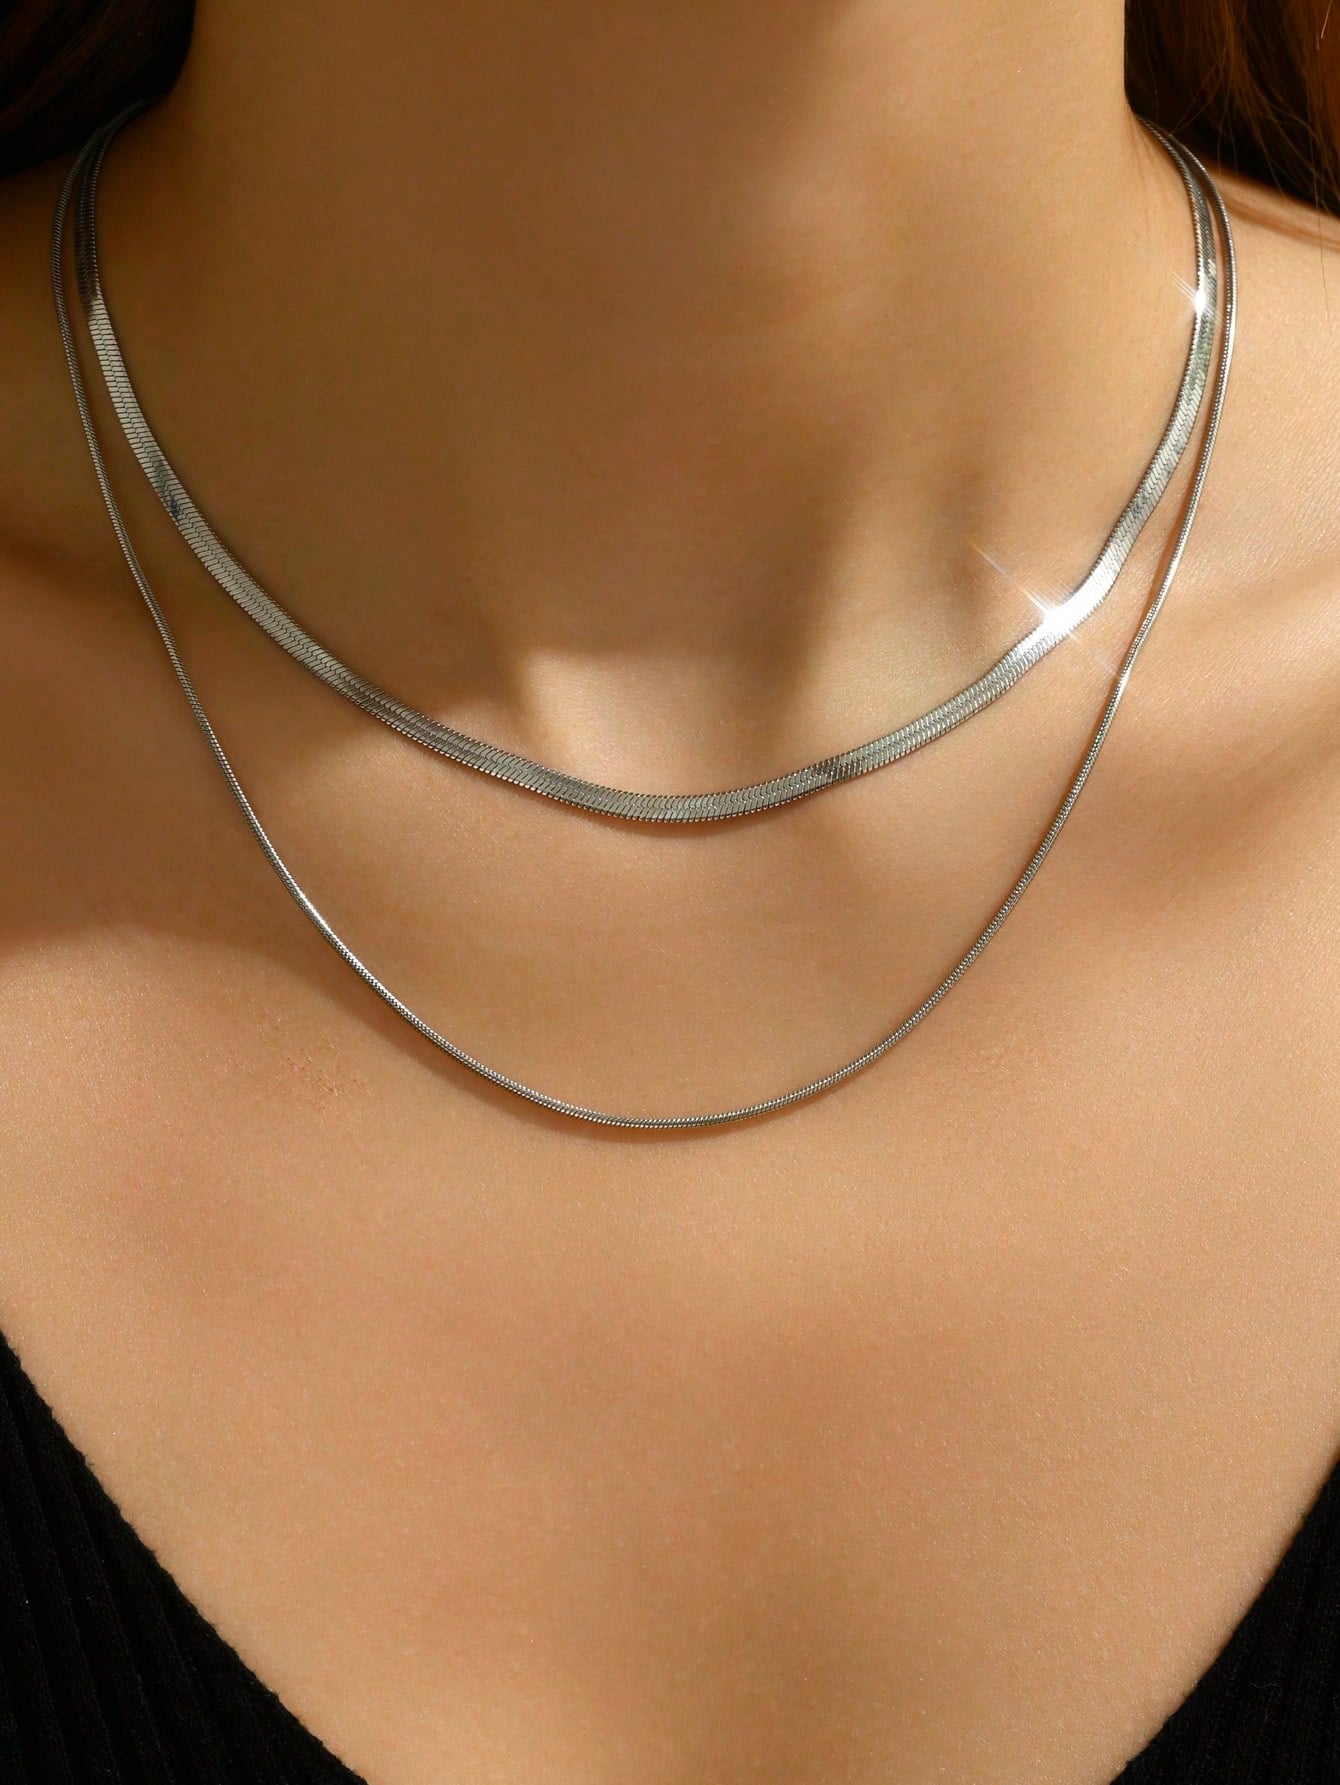 2Pcs/Set Minimalist Chain Necklace